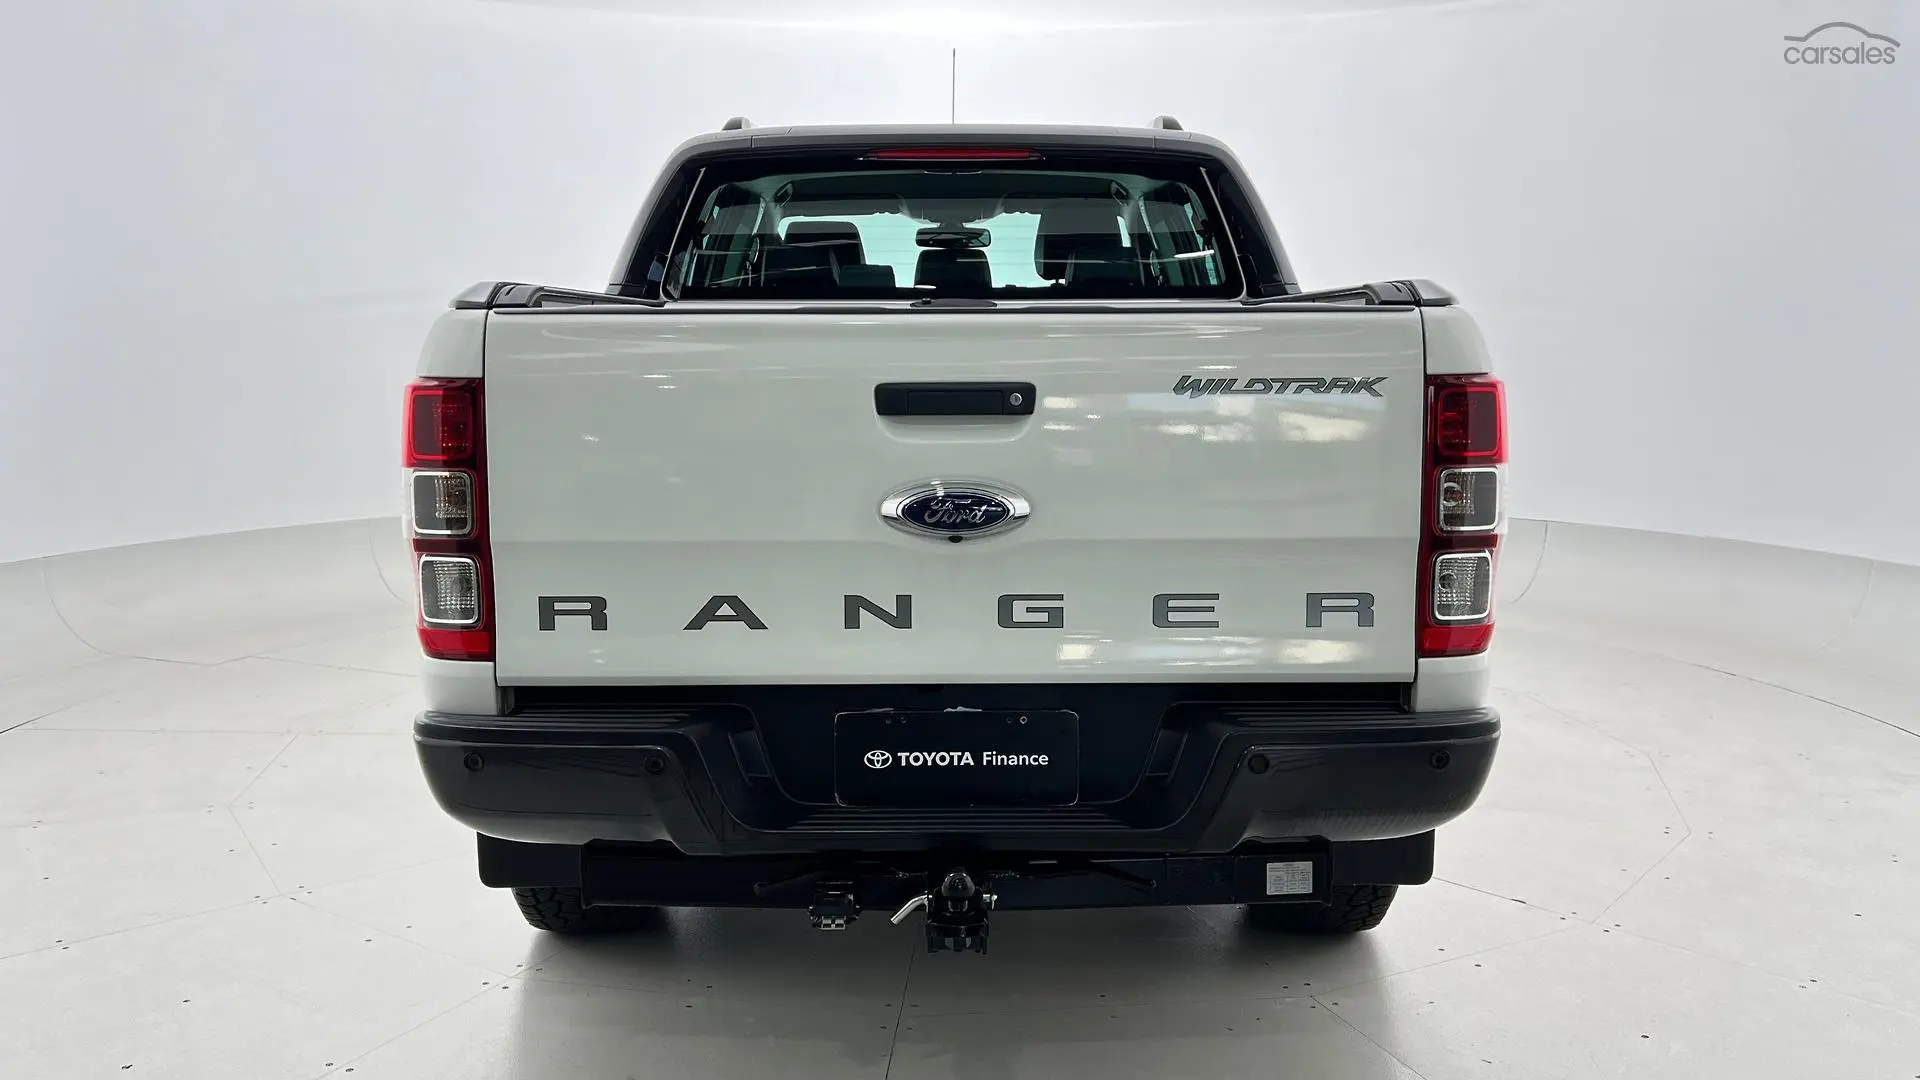 2014 Ford Ranger Image 6